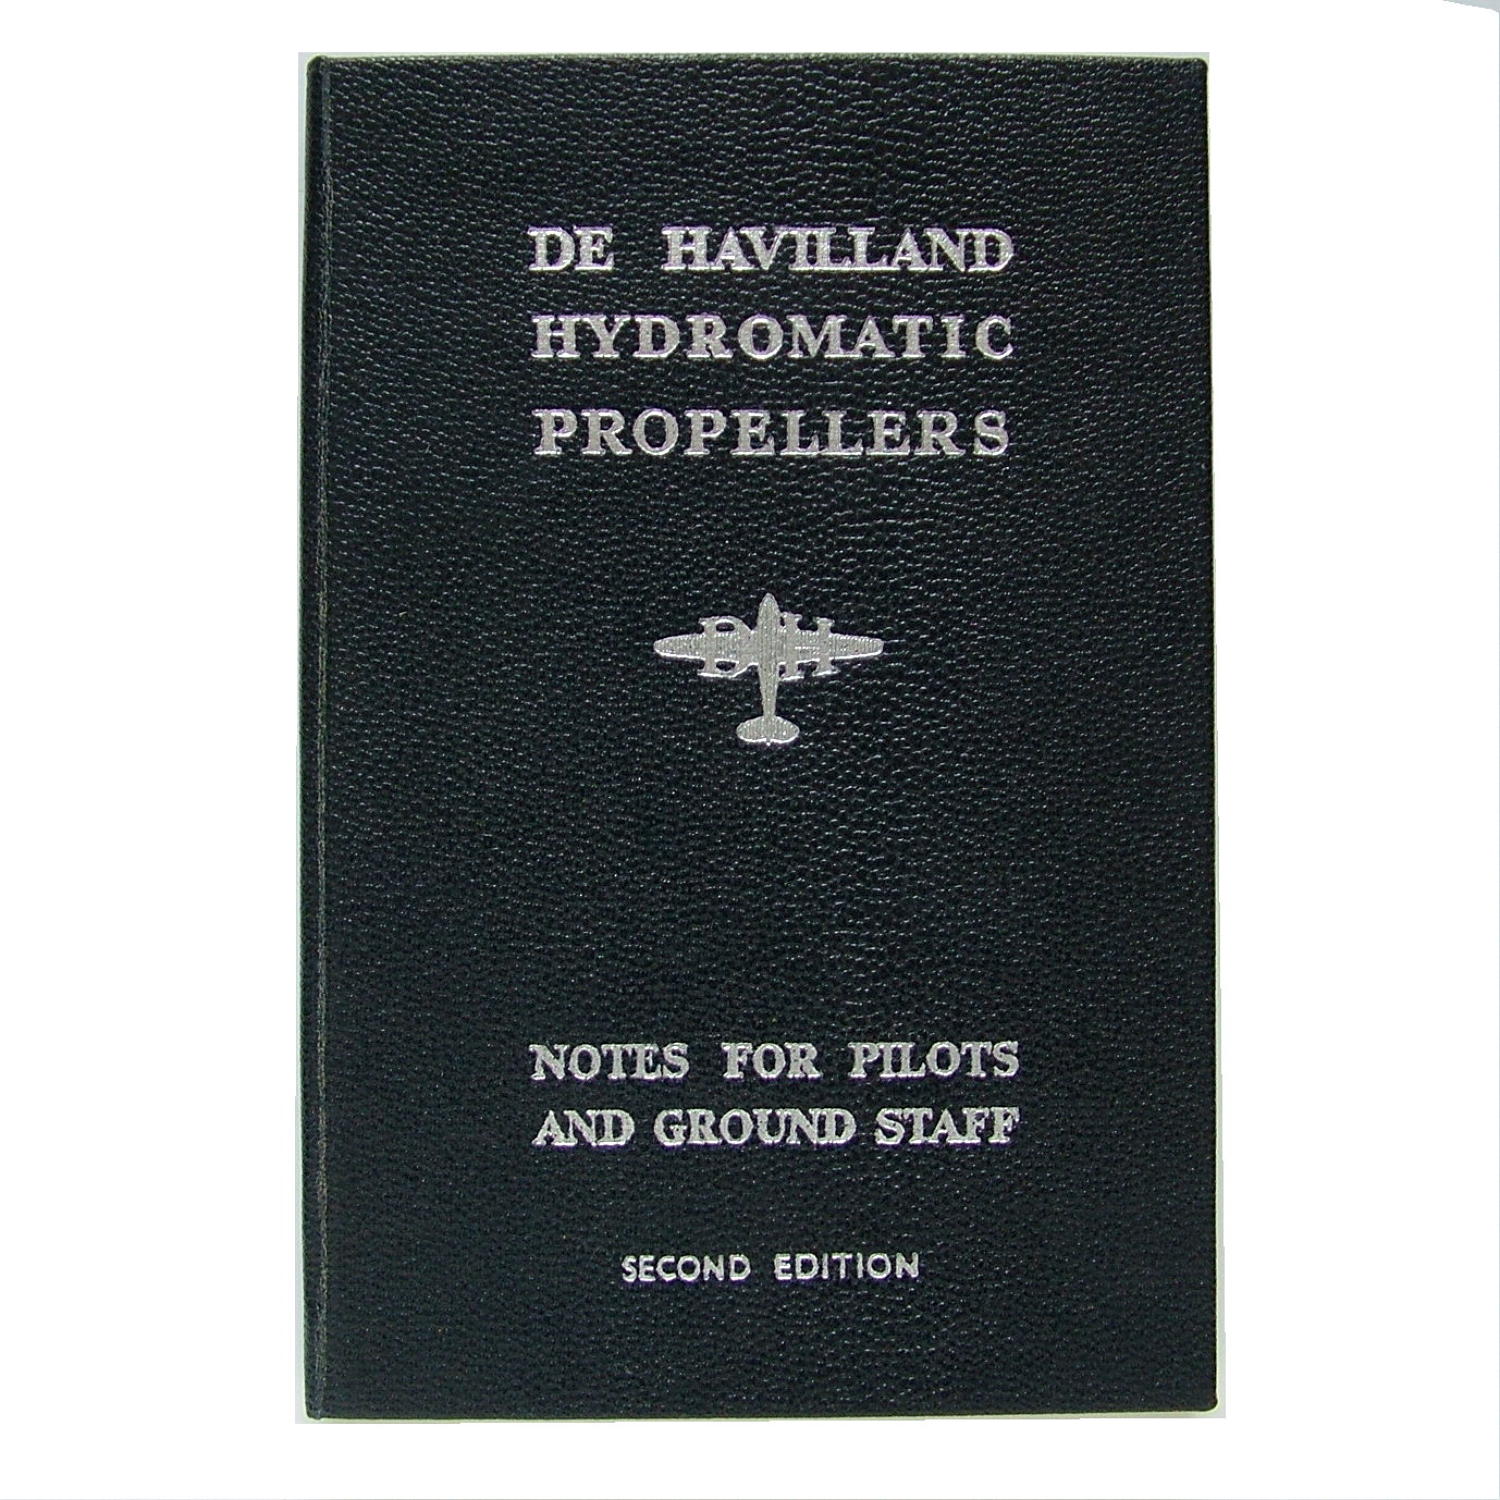 De Havilland propeller notes